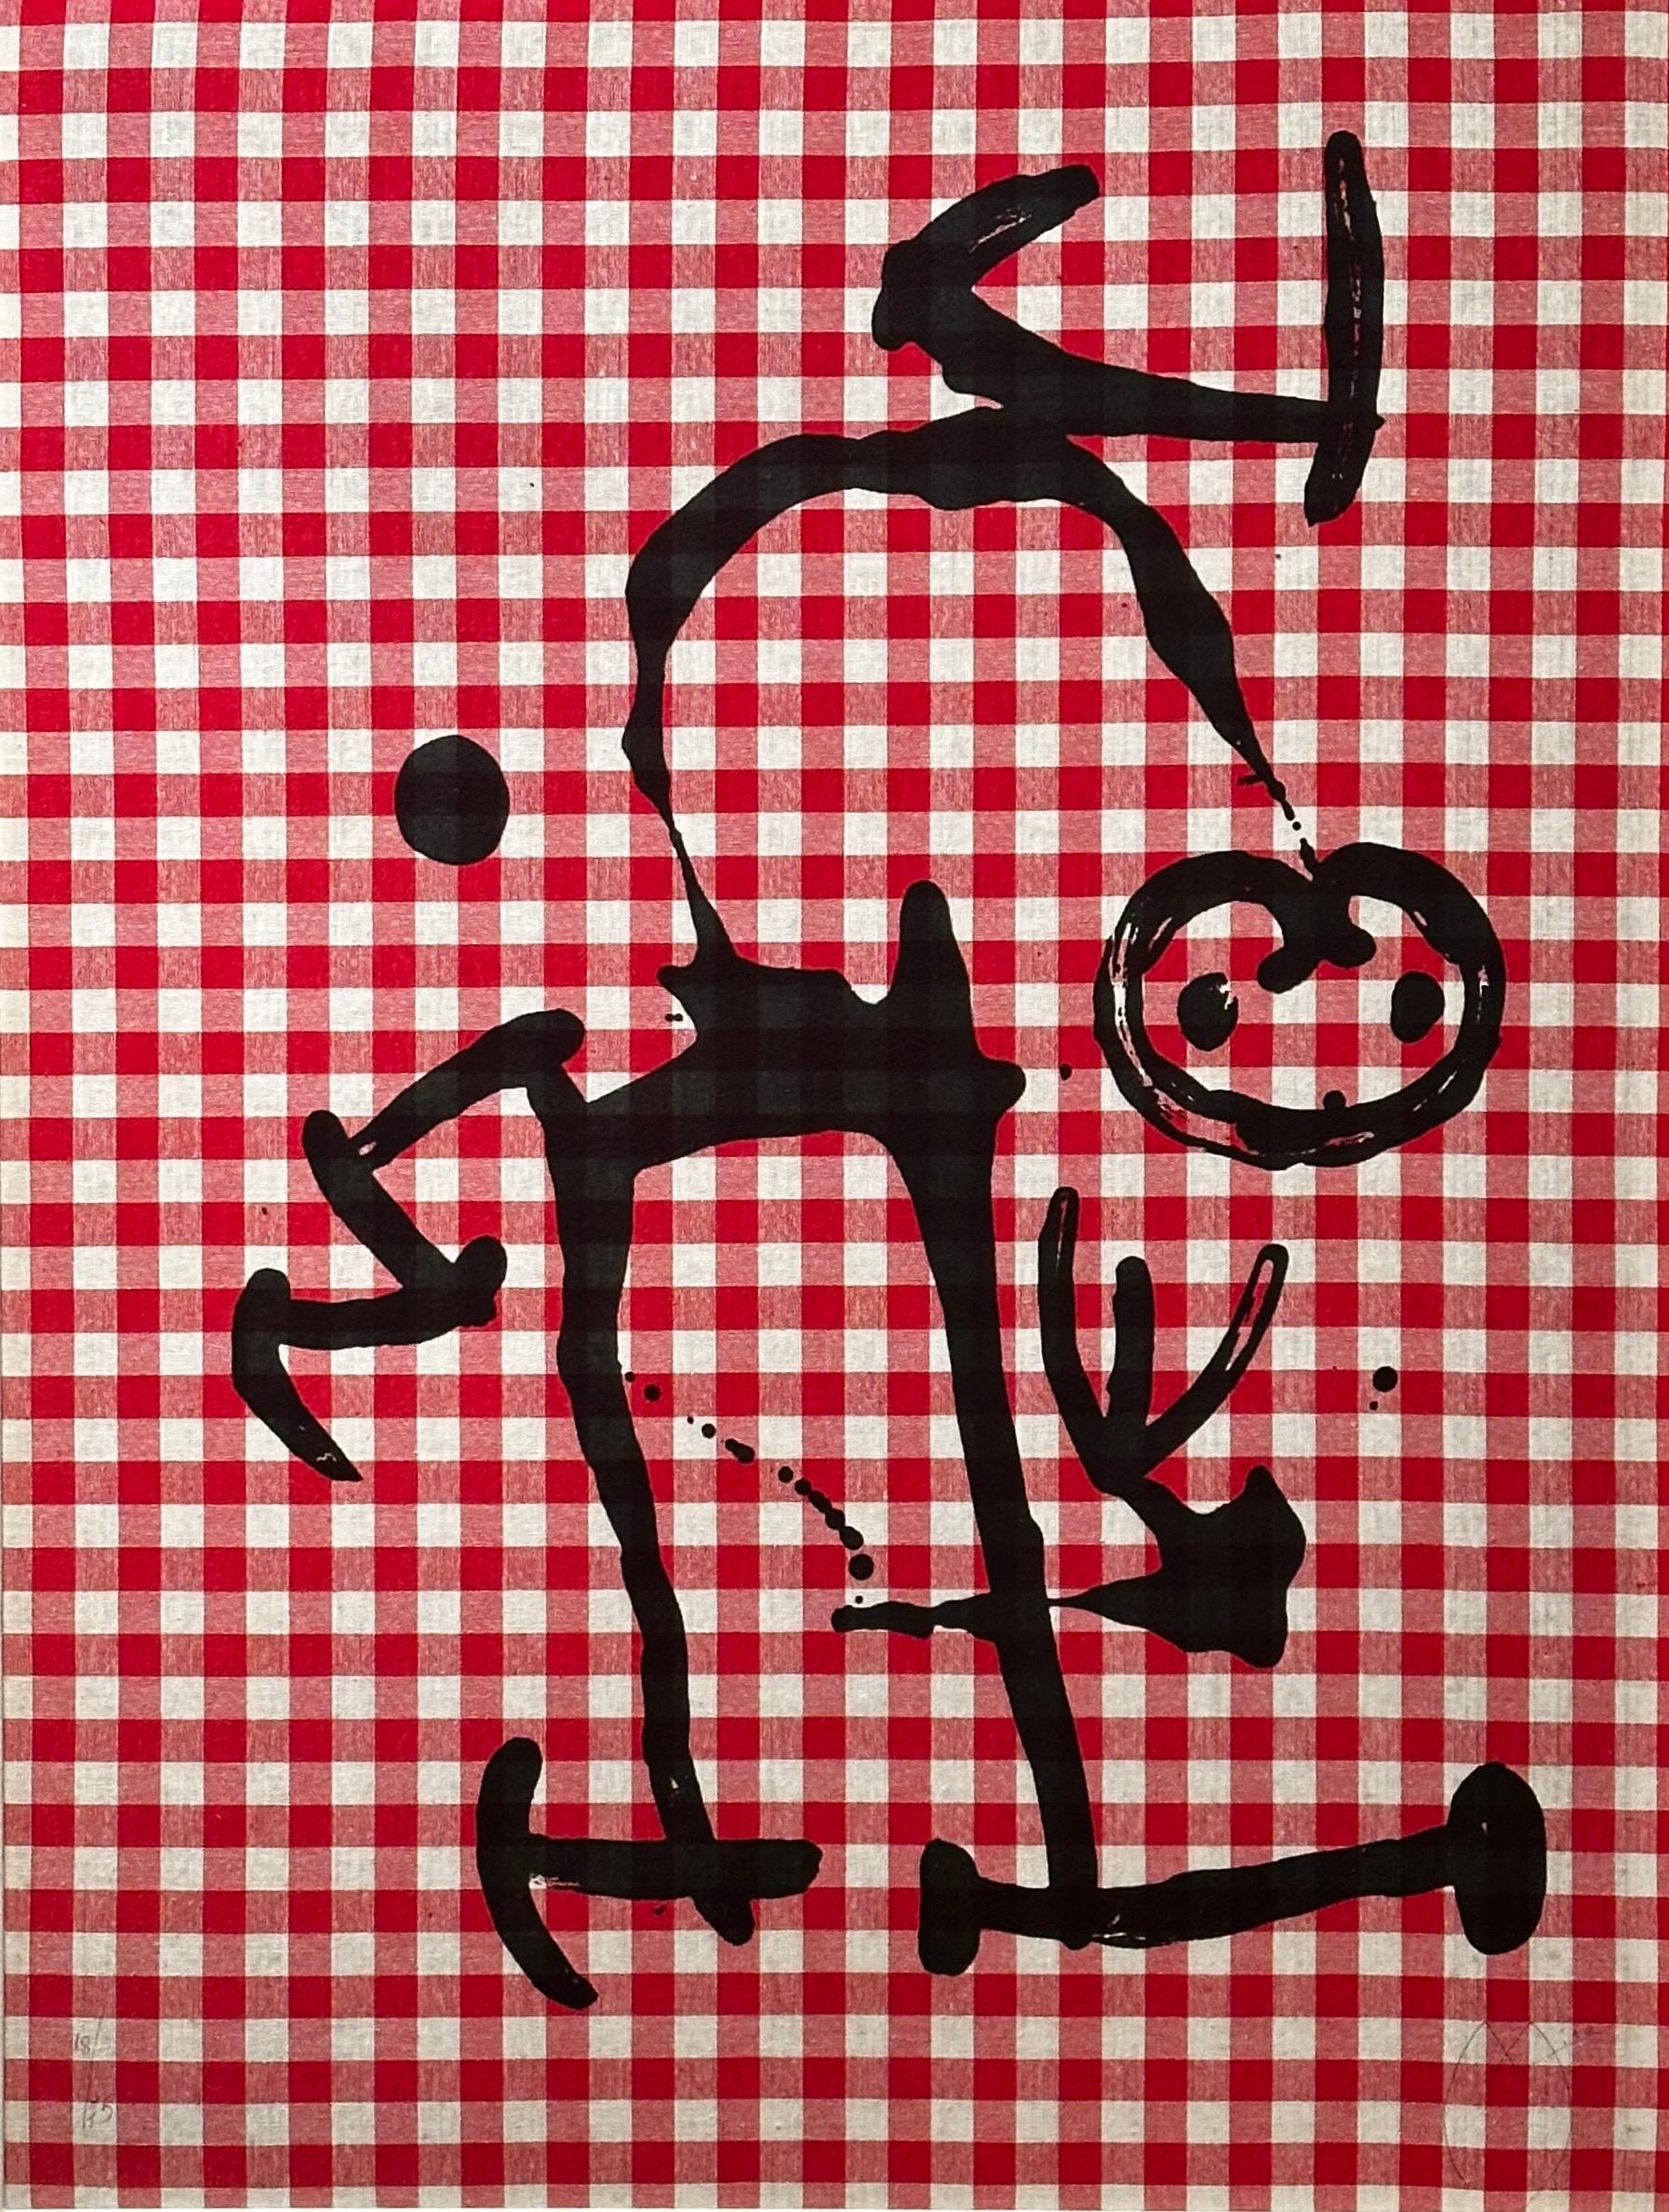 Abstract Print Joan Miró - L'Illettré aux Carreaux Rouges